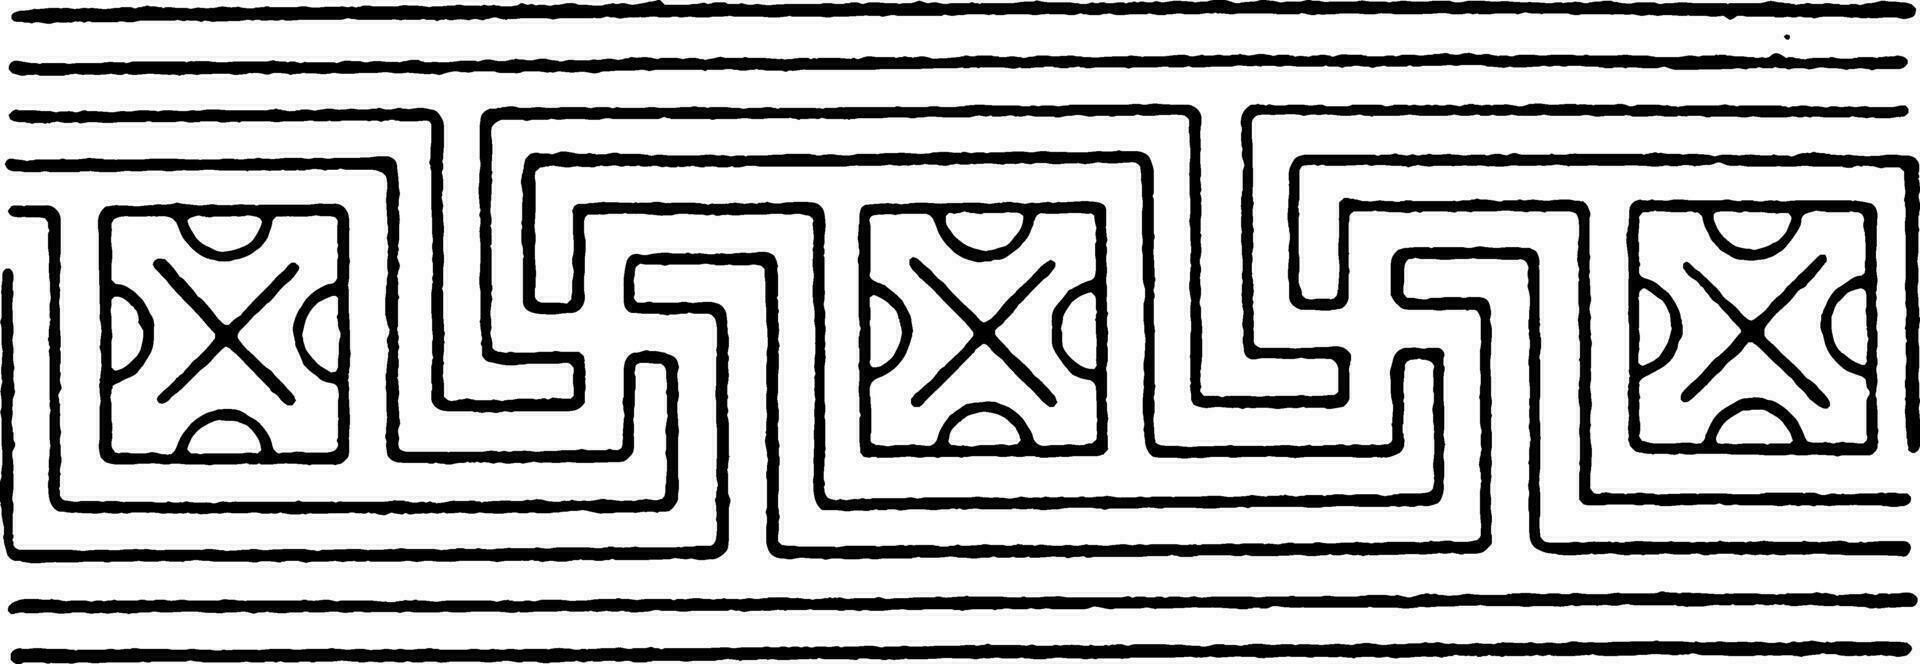 gewöhnliche sich überschneiden Bund Band ist ein Muster Das Kreuze jeder andere, Jahrgang Gravur. vektor